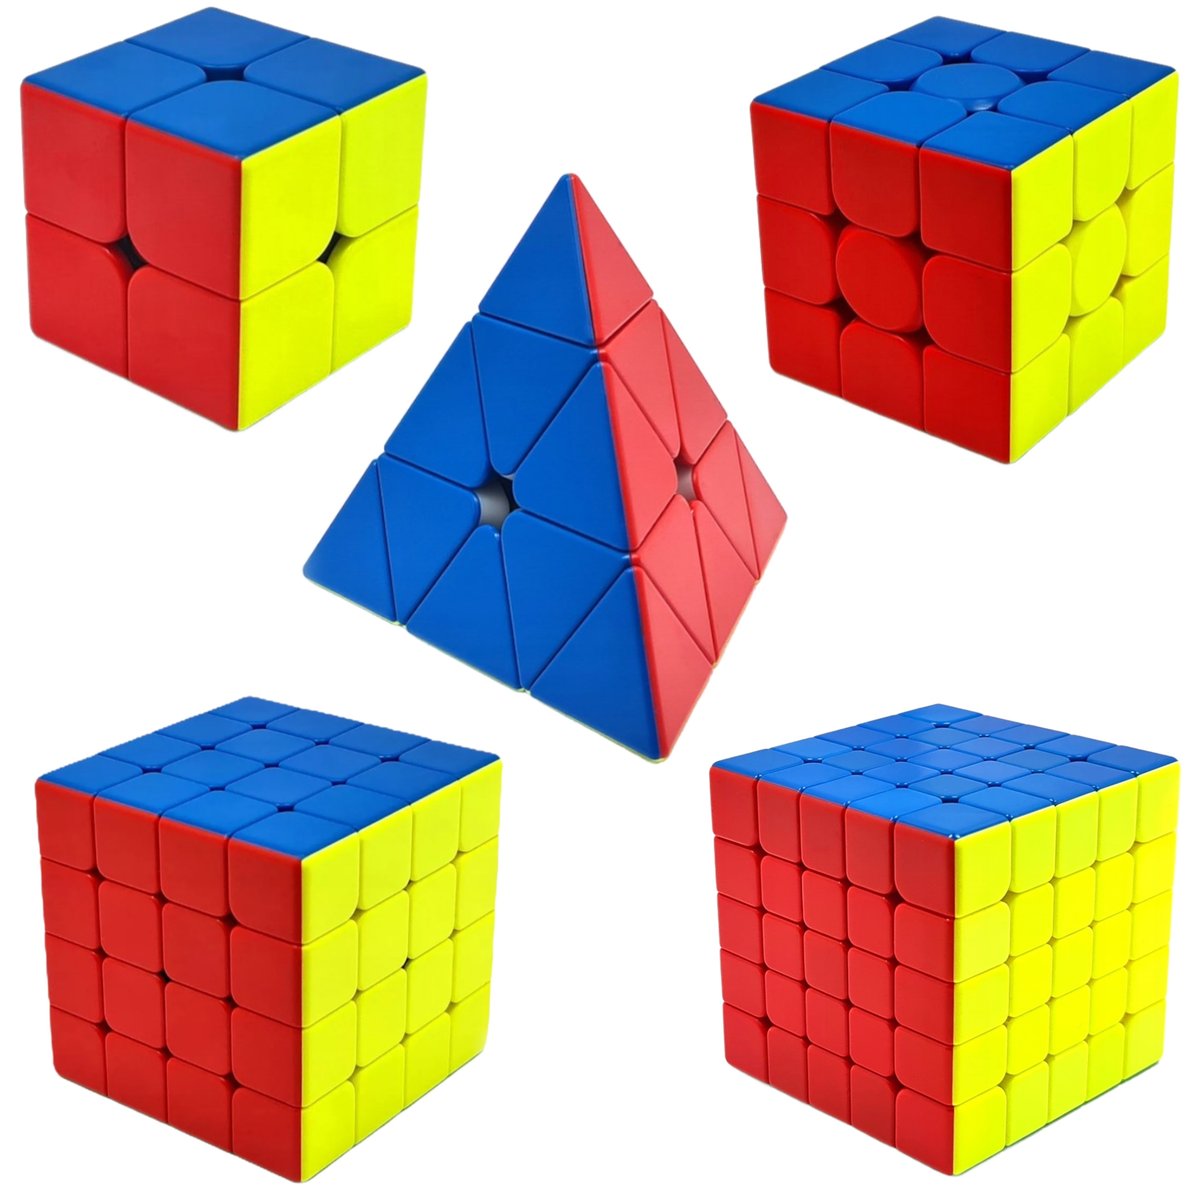 Zestaw Kostka Rubika 2x2 + 3x3 + 4x4 + 5x5 + Piramida MoYu